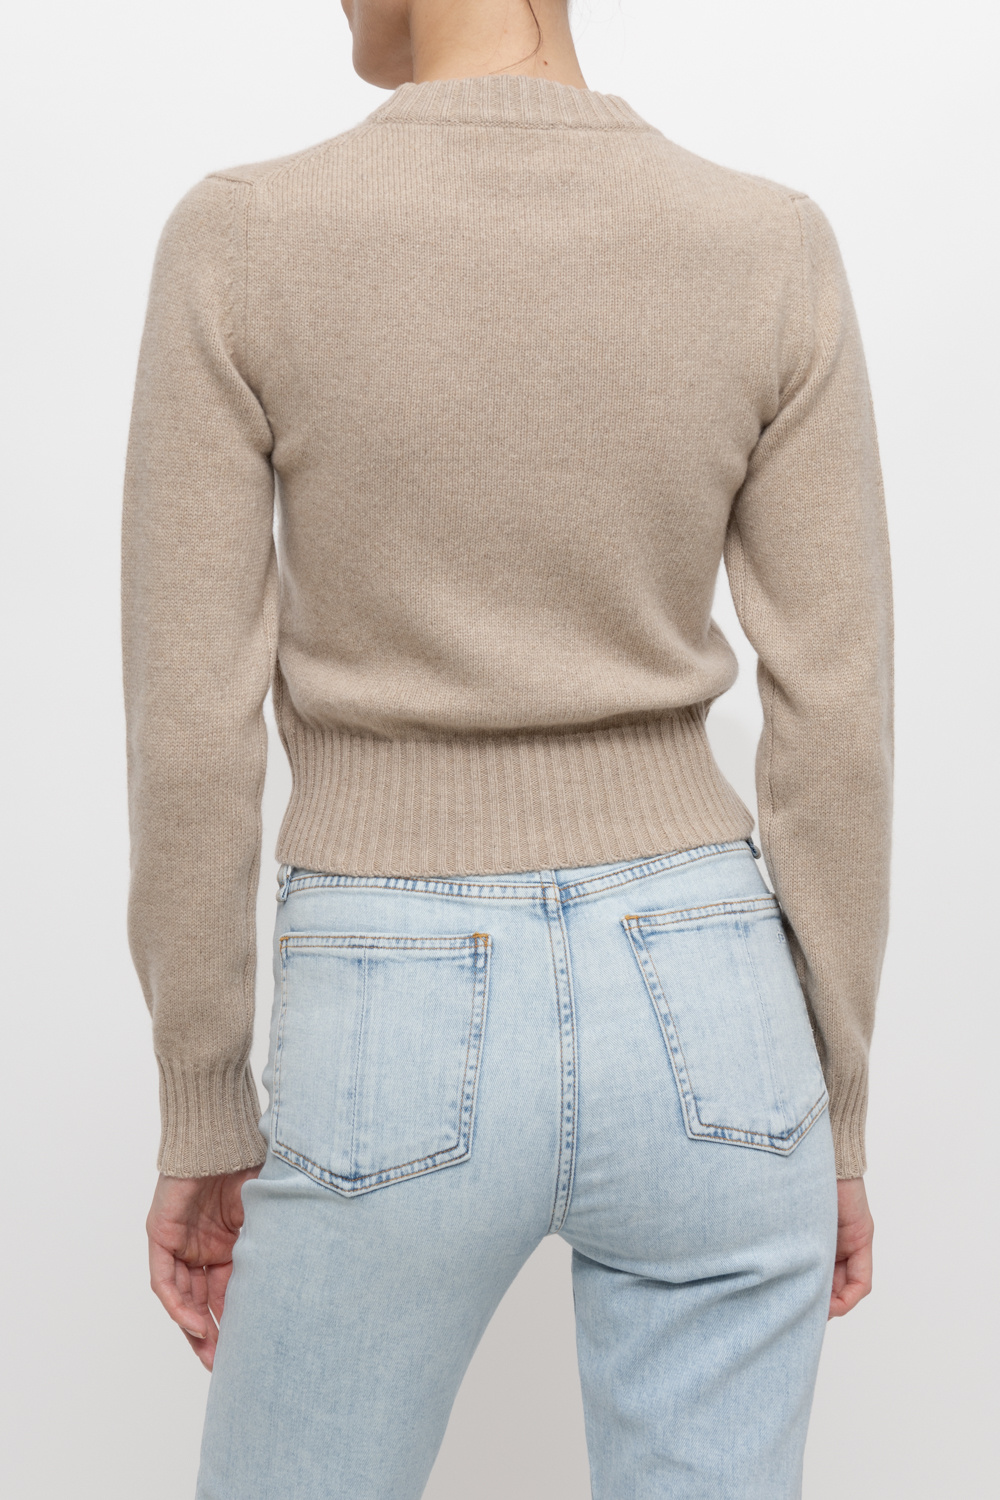 Ami Alexandre Mattiussi Cashmere sweater